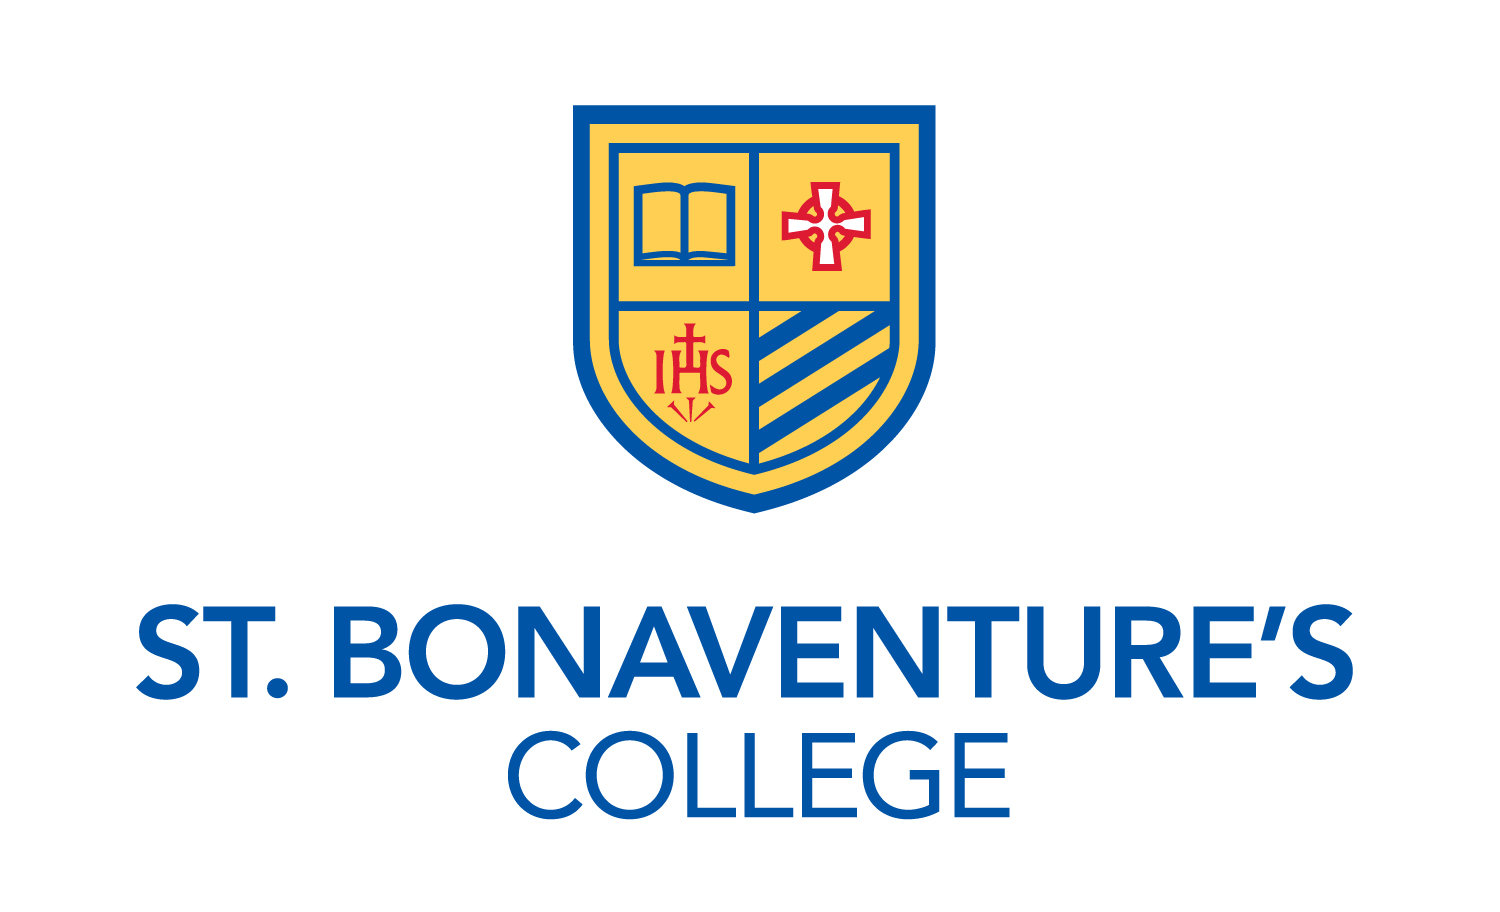 St. Bonaventure's College Inc.